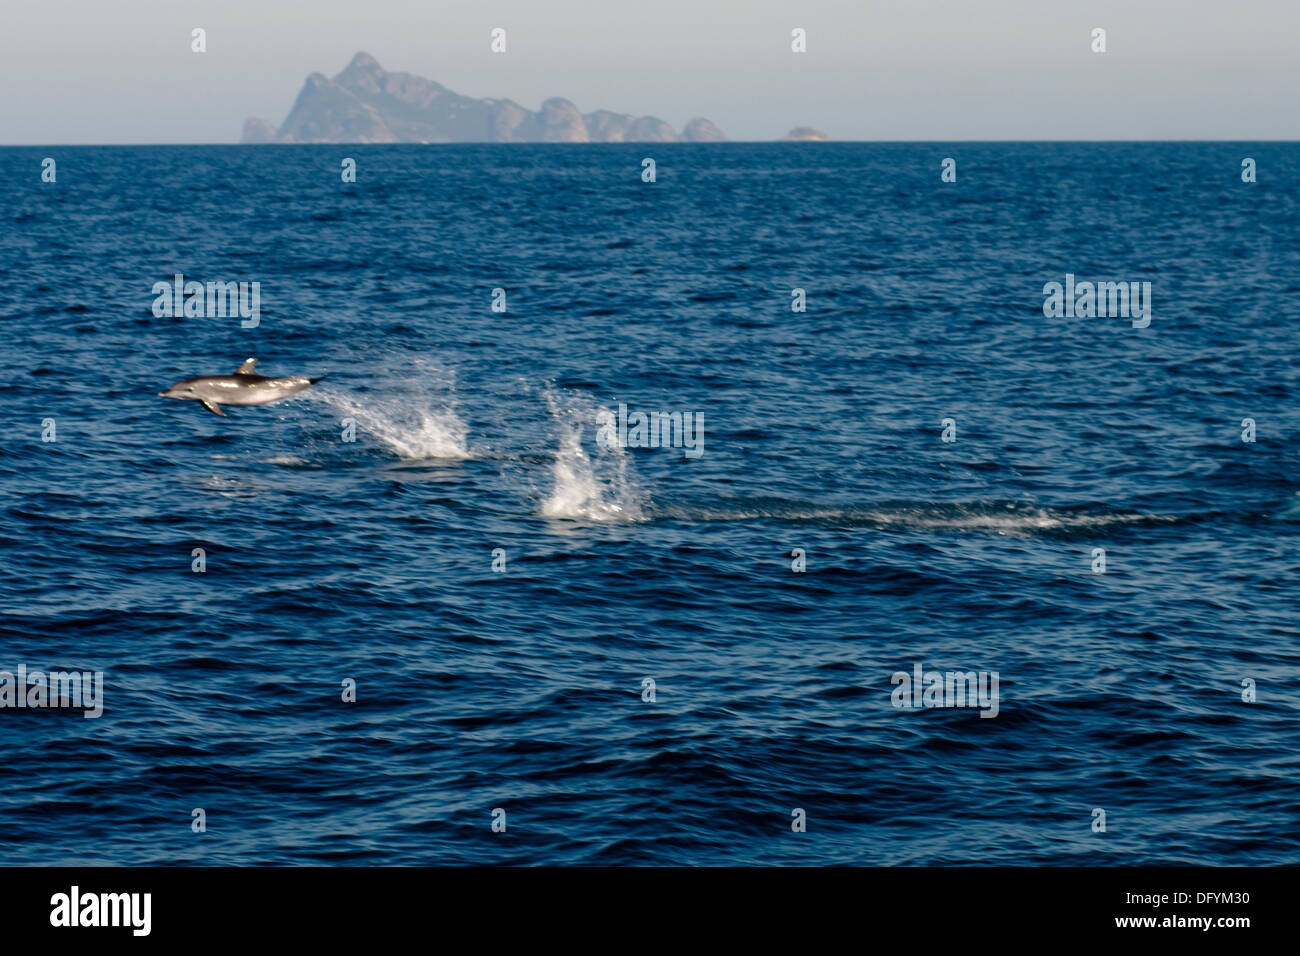 wild dolphin jumping at the ocean, with Alcatrazes island at horizon. Sao Paulo, Brazil Stock Photo